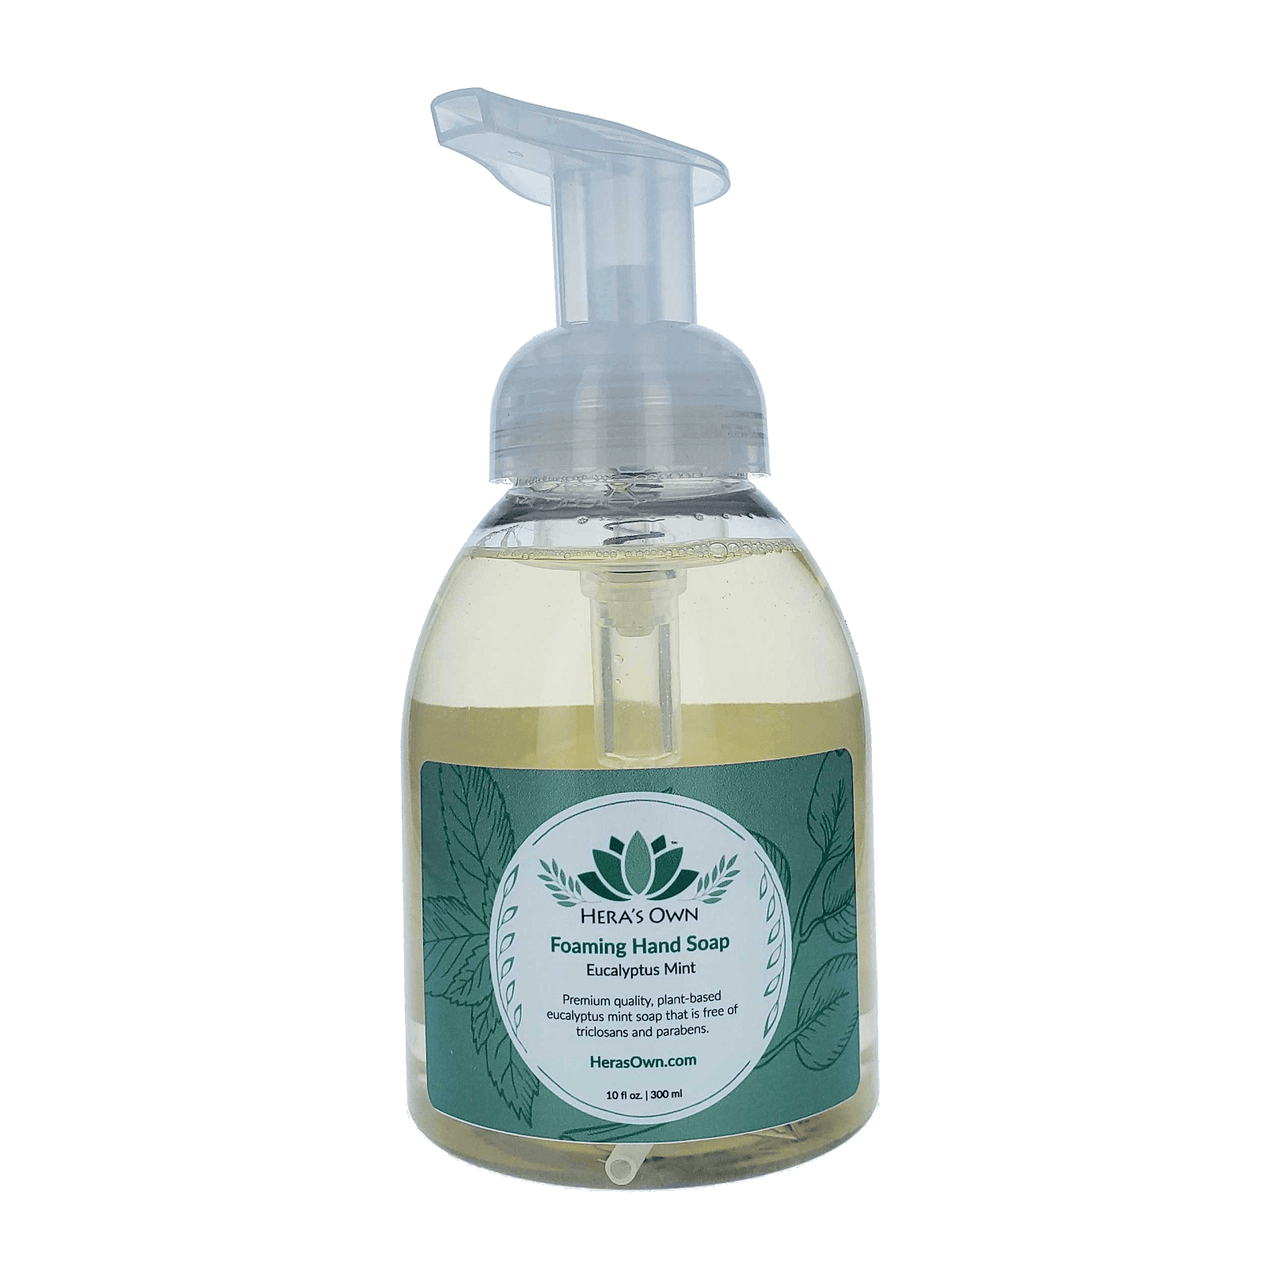 Hera's Own Foaming Hand Soap - Eucalyptus Mint - 10 fl oz. (300 ml)